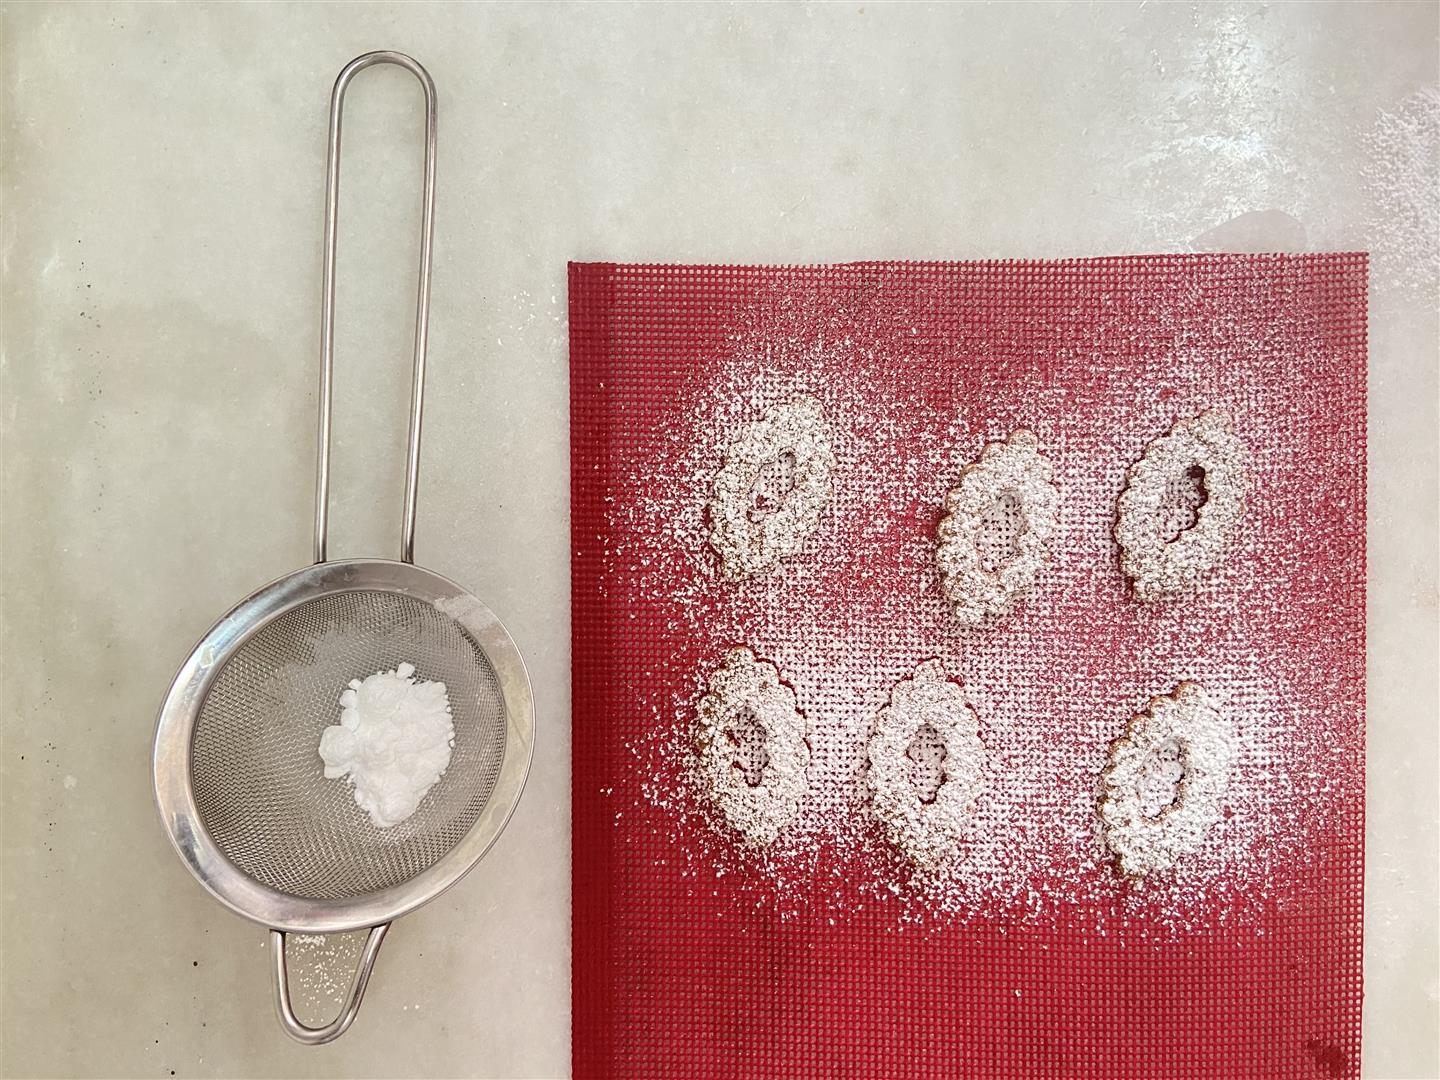 Photography from: Aprende a hacer galletas linzer, una de las recetas del Diploma en Pastelería Gastronómica del CETT-UB | CETT